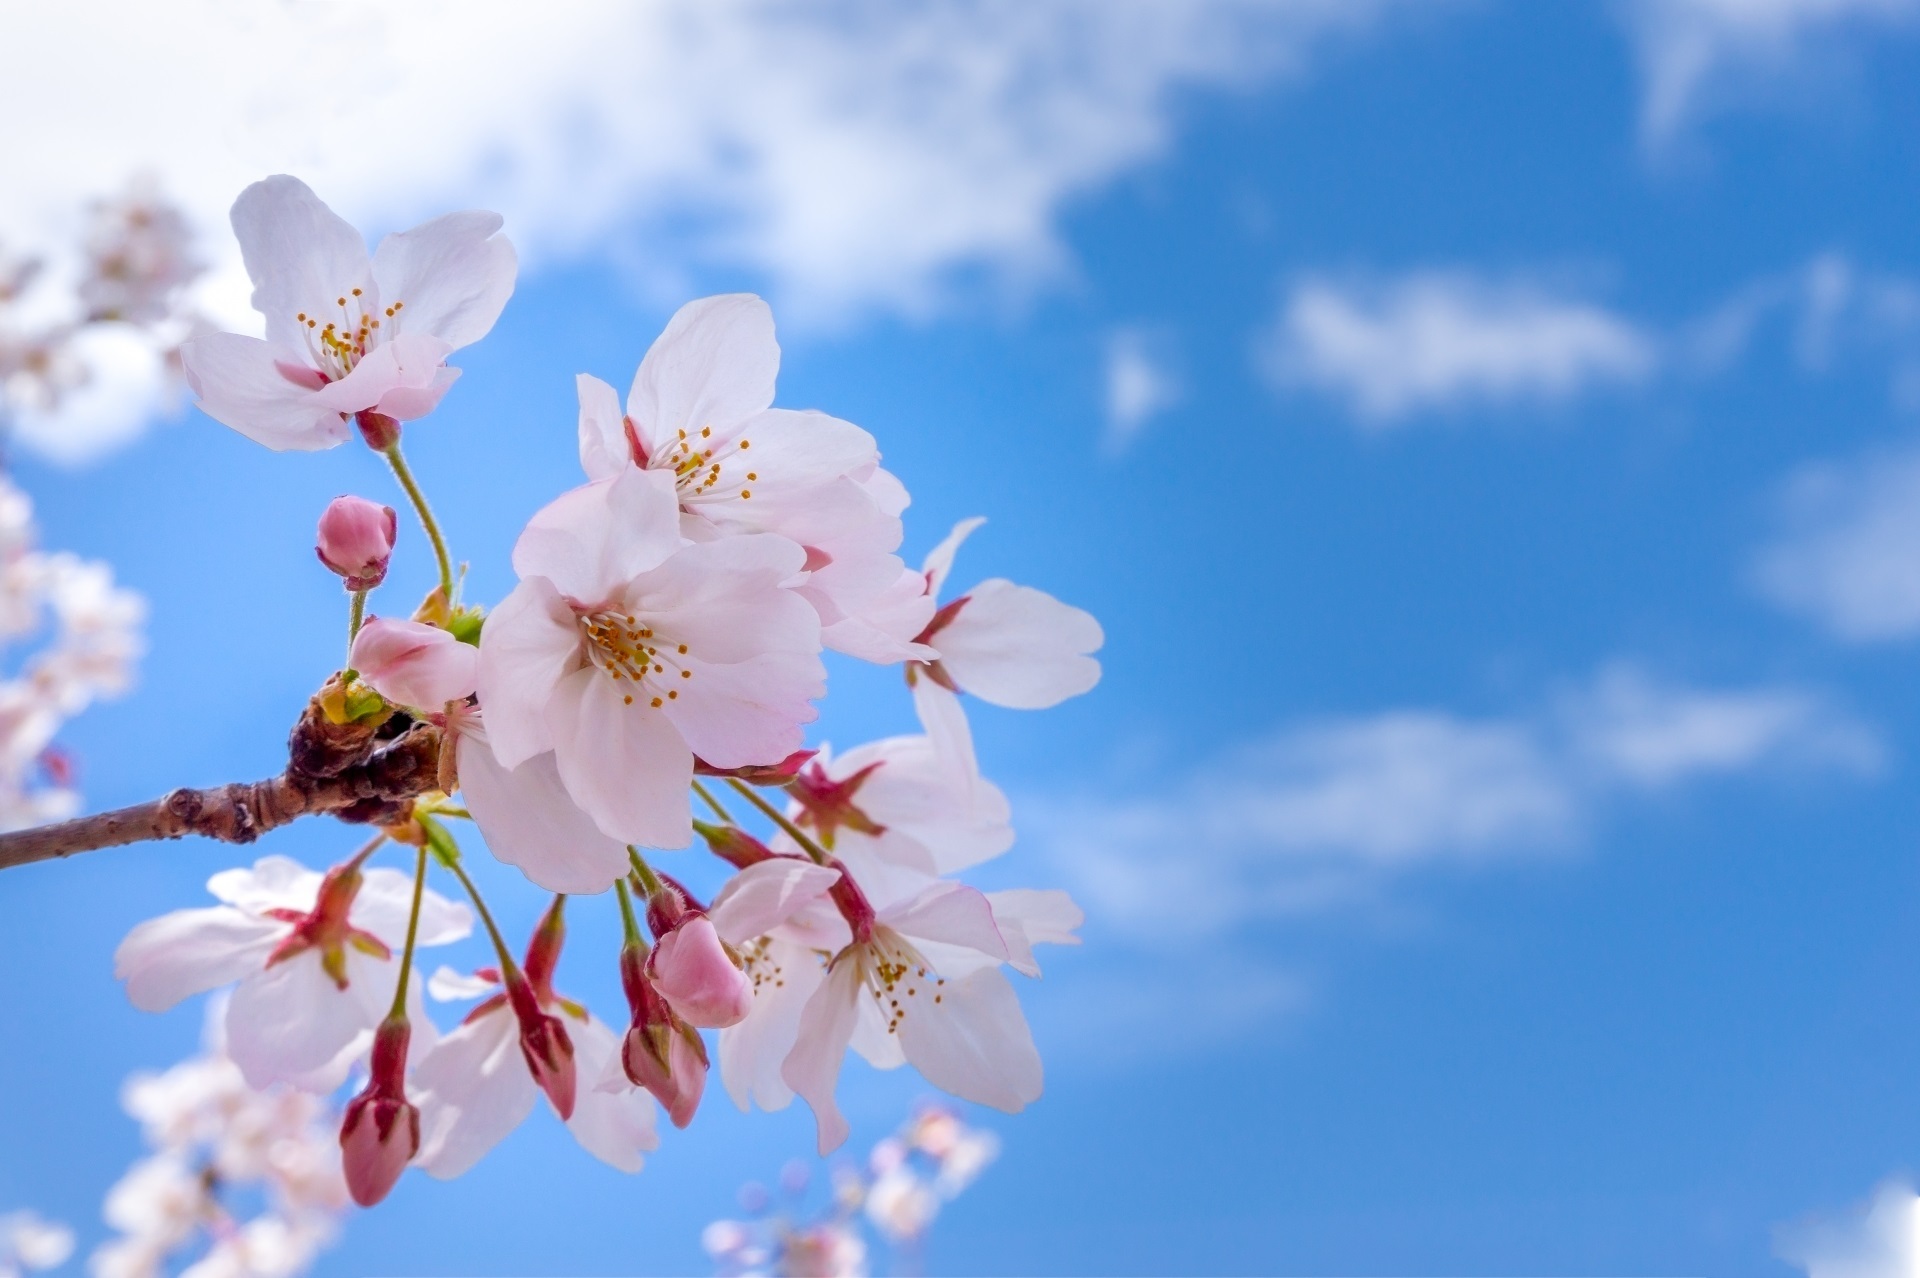 青空に映える桜の花(この画像はイメージです)